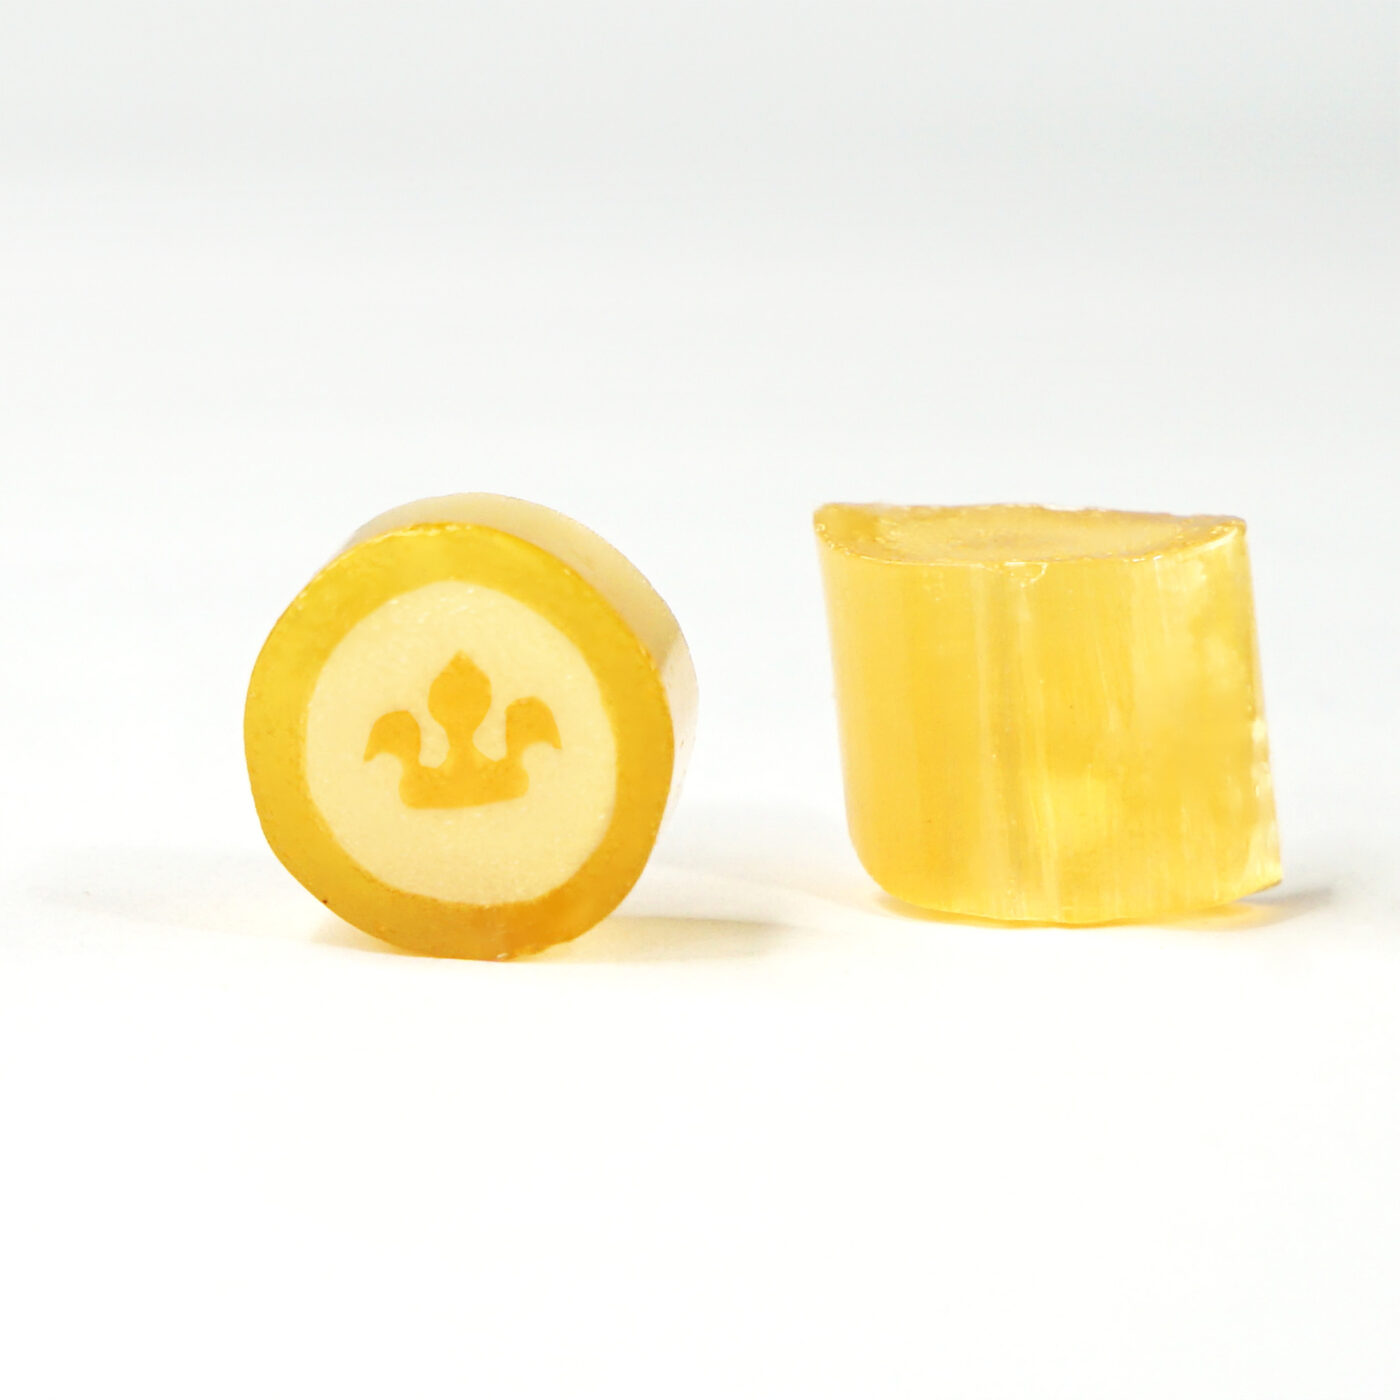 Ein gelbes Bonbon mit einer Krone als Motiv